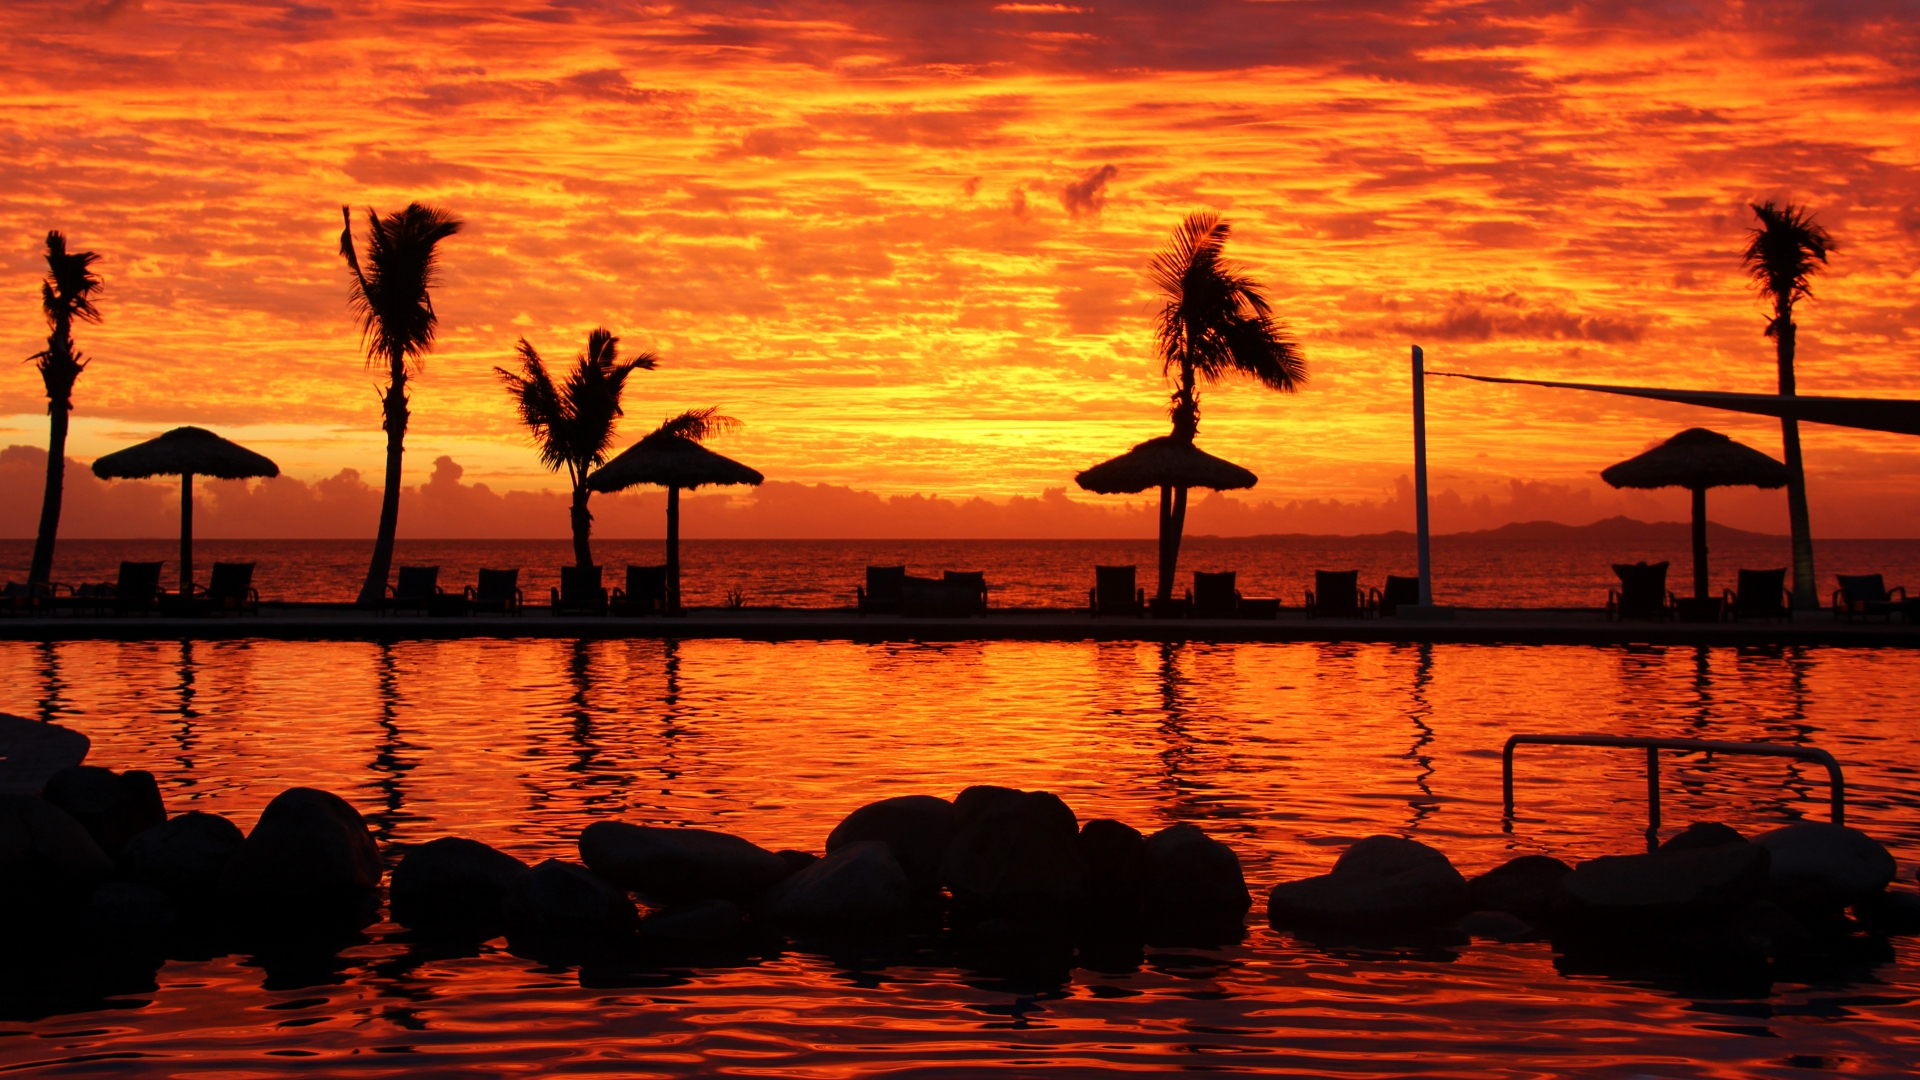 Fijian Sunset for 1920 x 1080 HDTV 1080p resolution